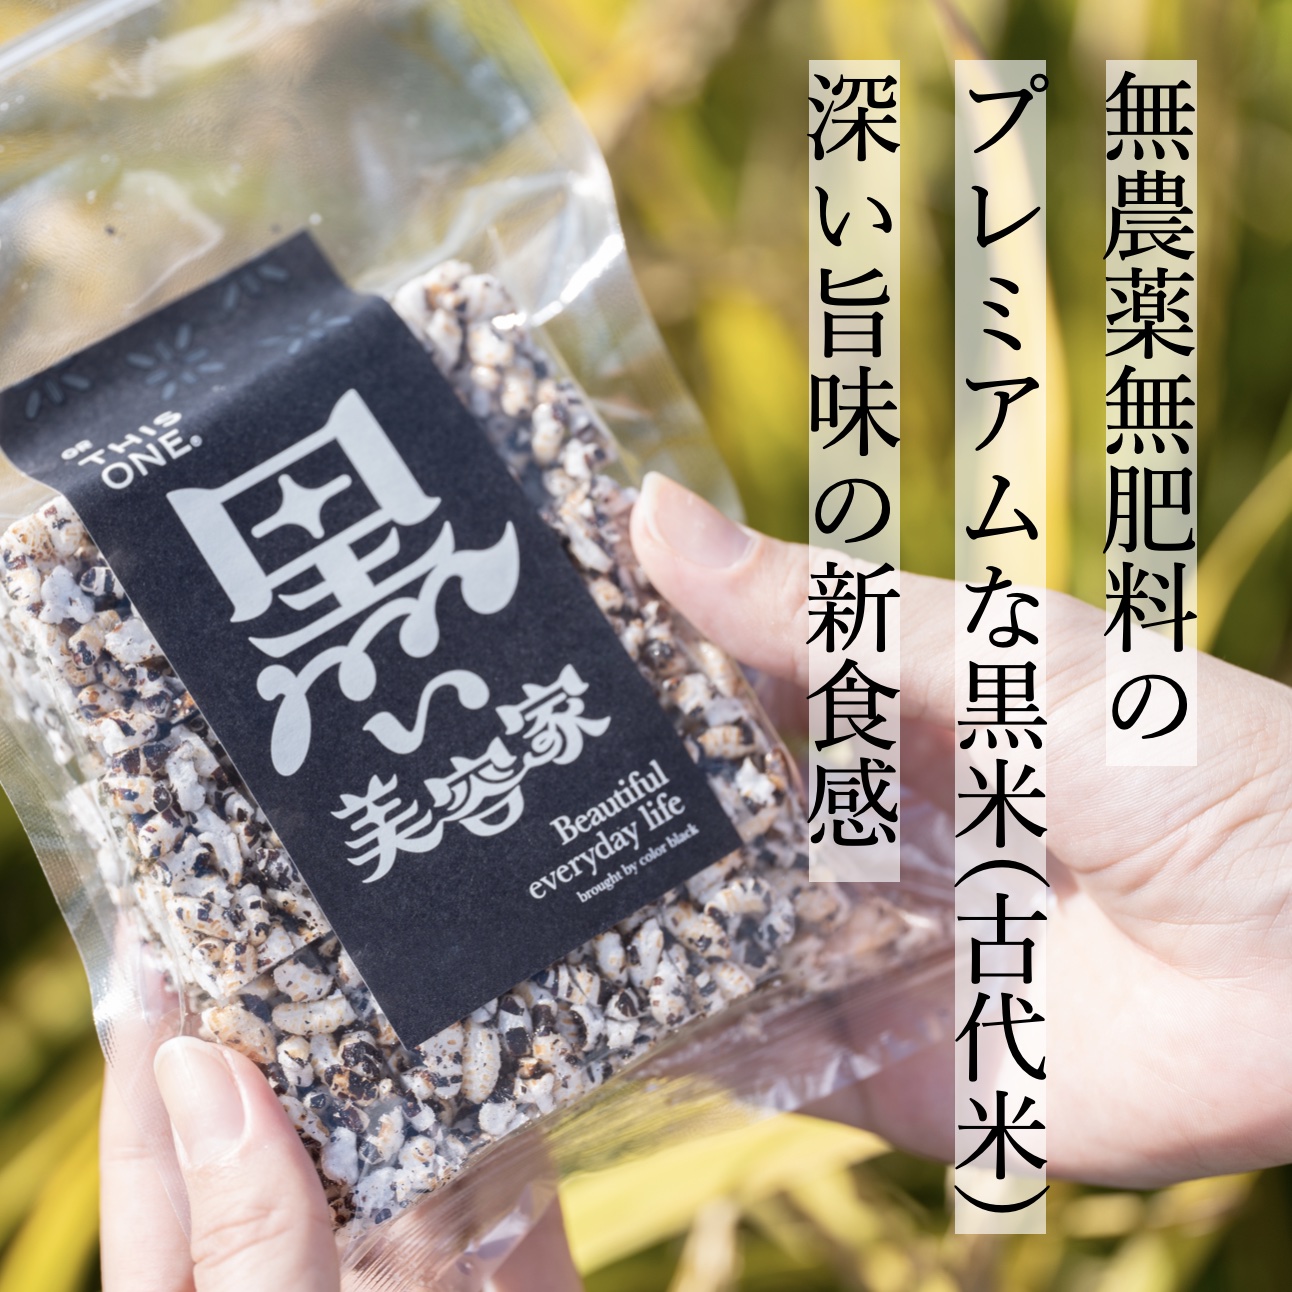 和歌山で育った無農薬無添加の黒米をつかった美味しいポン菓子のイメージ